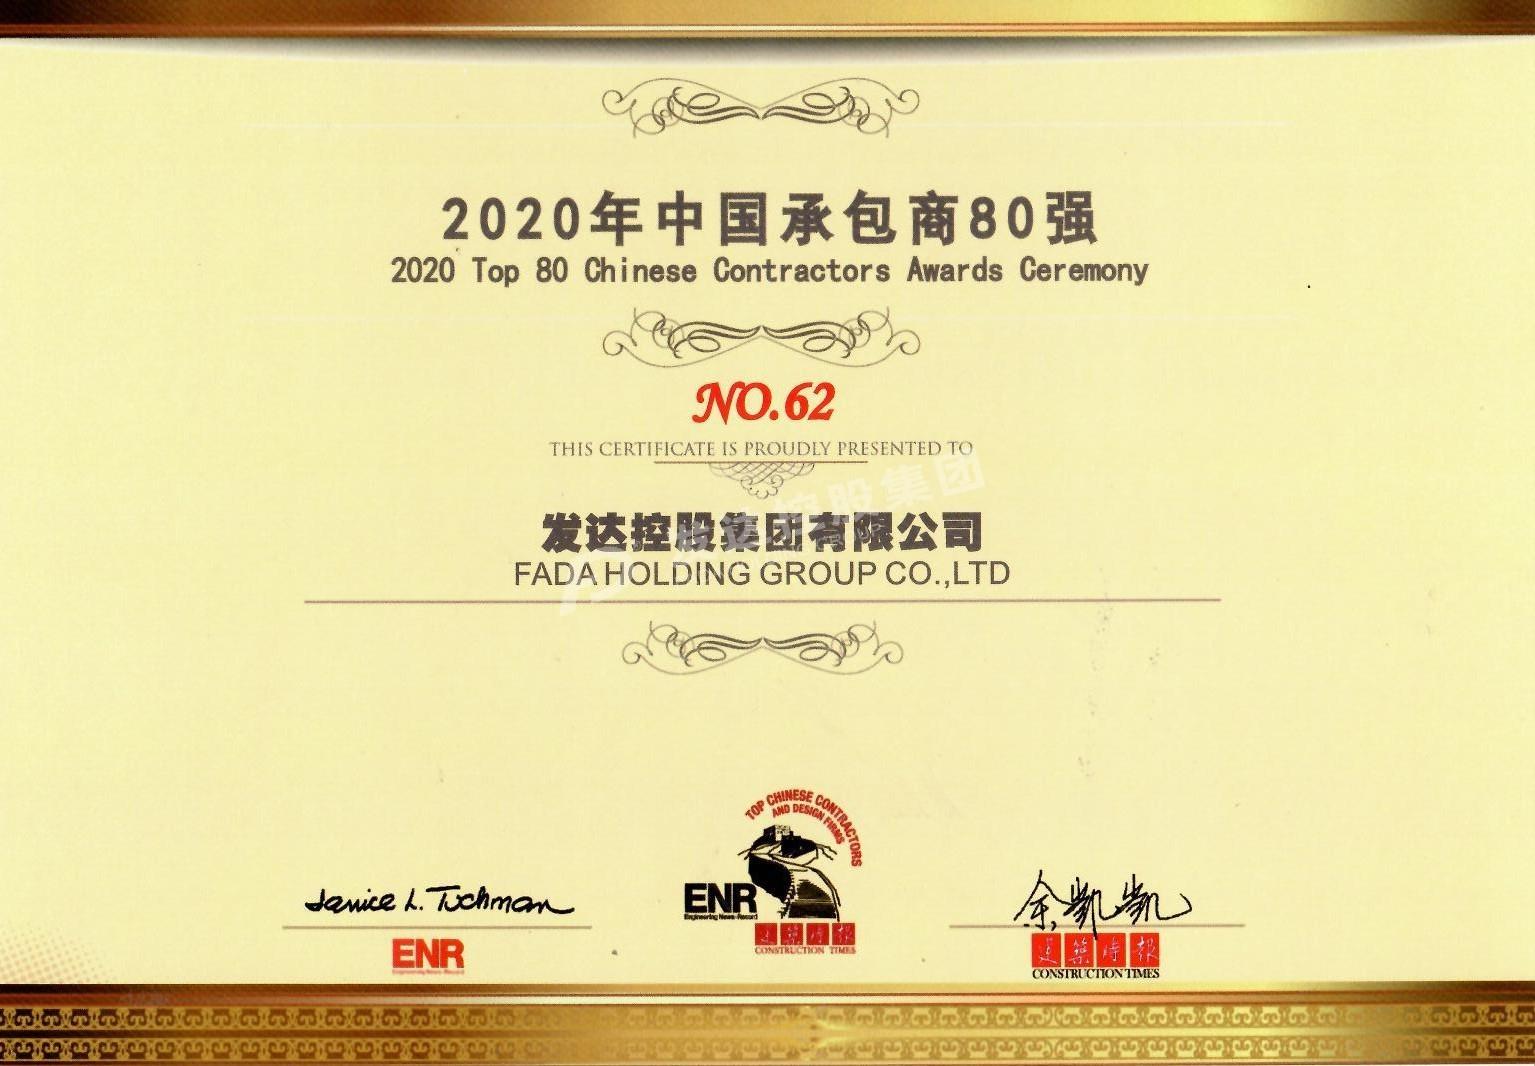 2020年中国承包商80强第62位